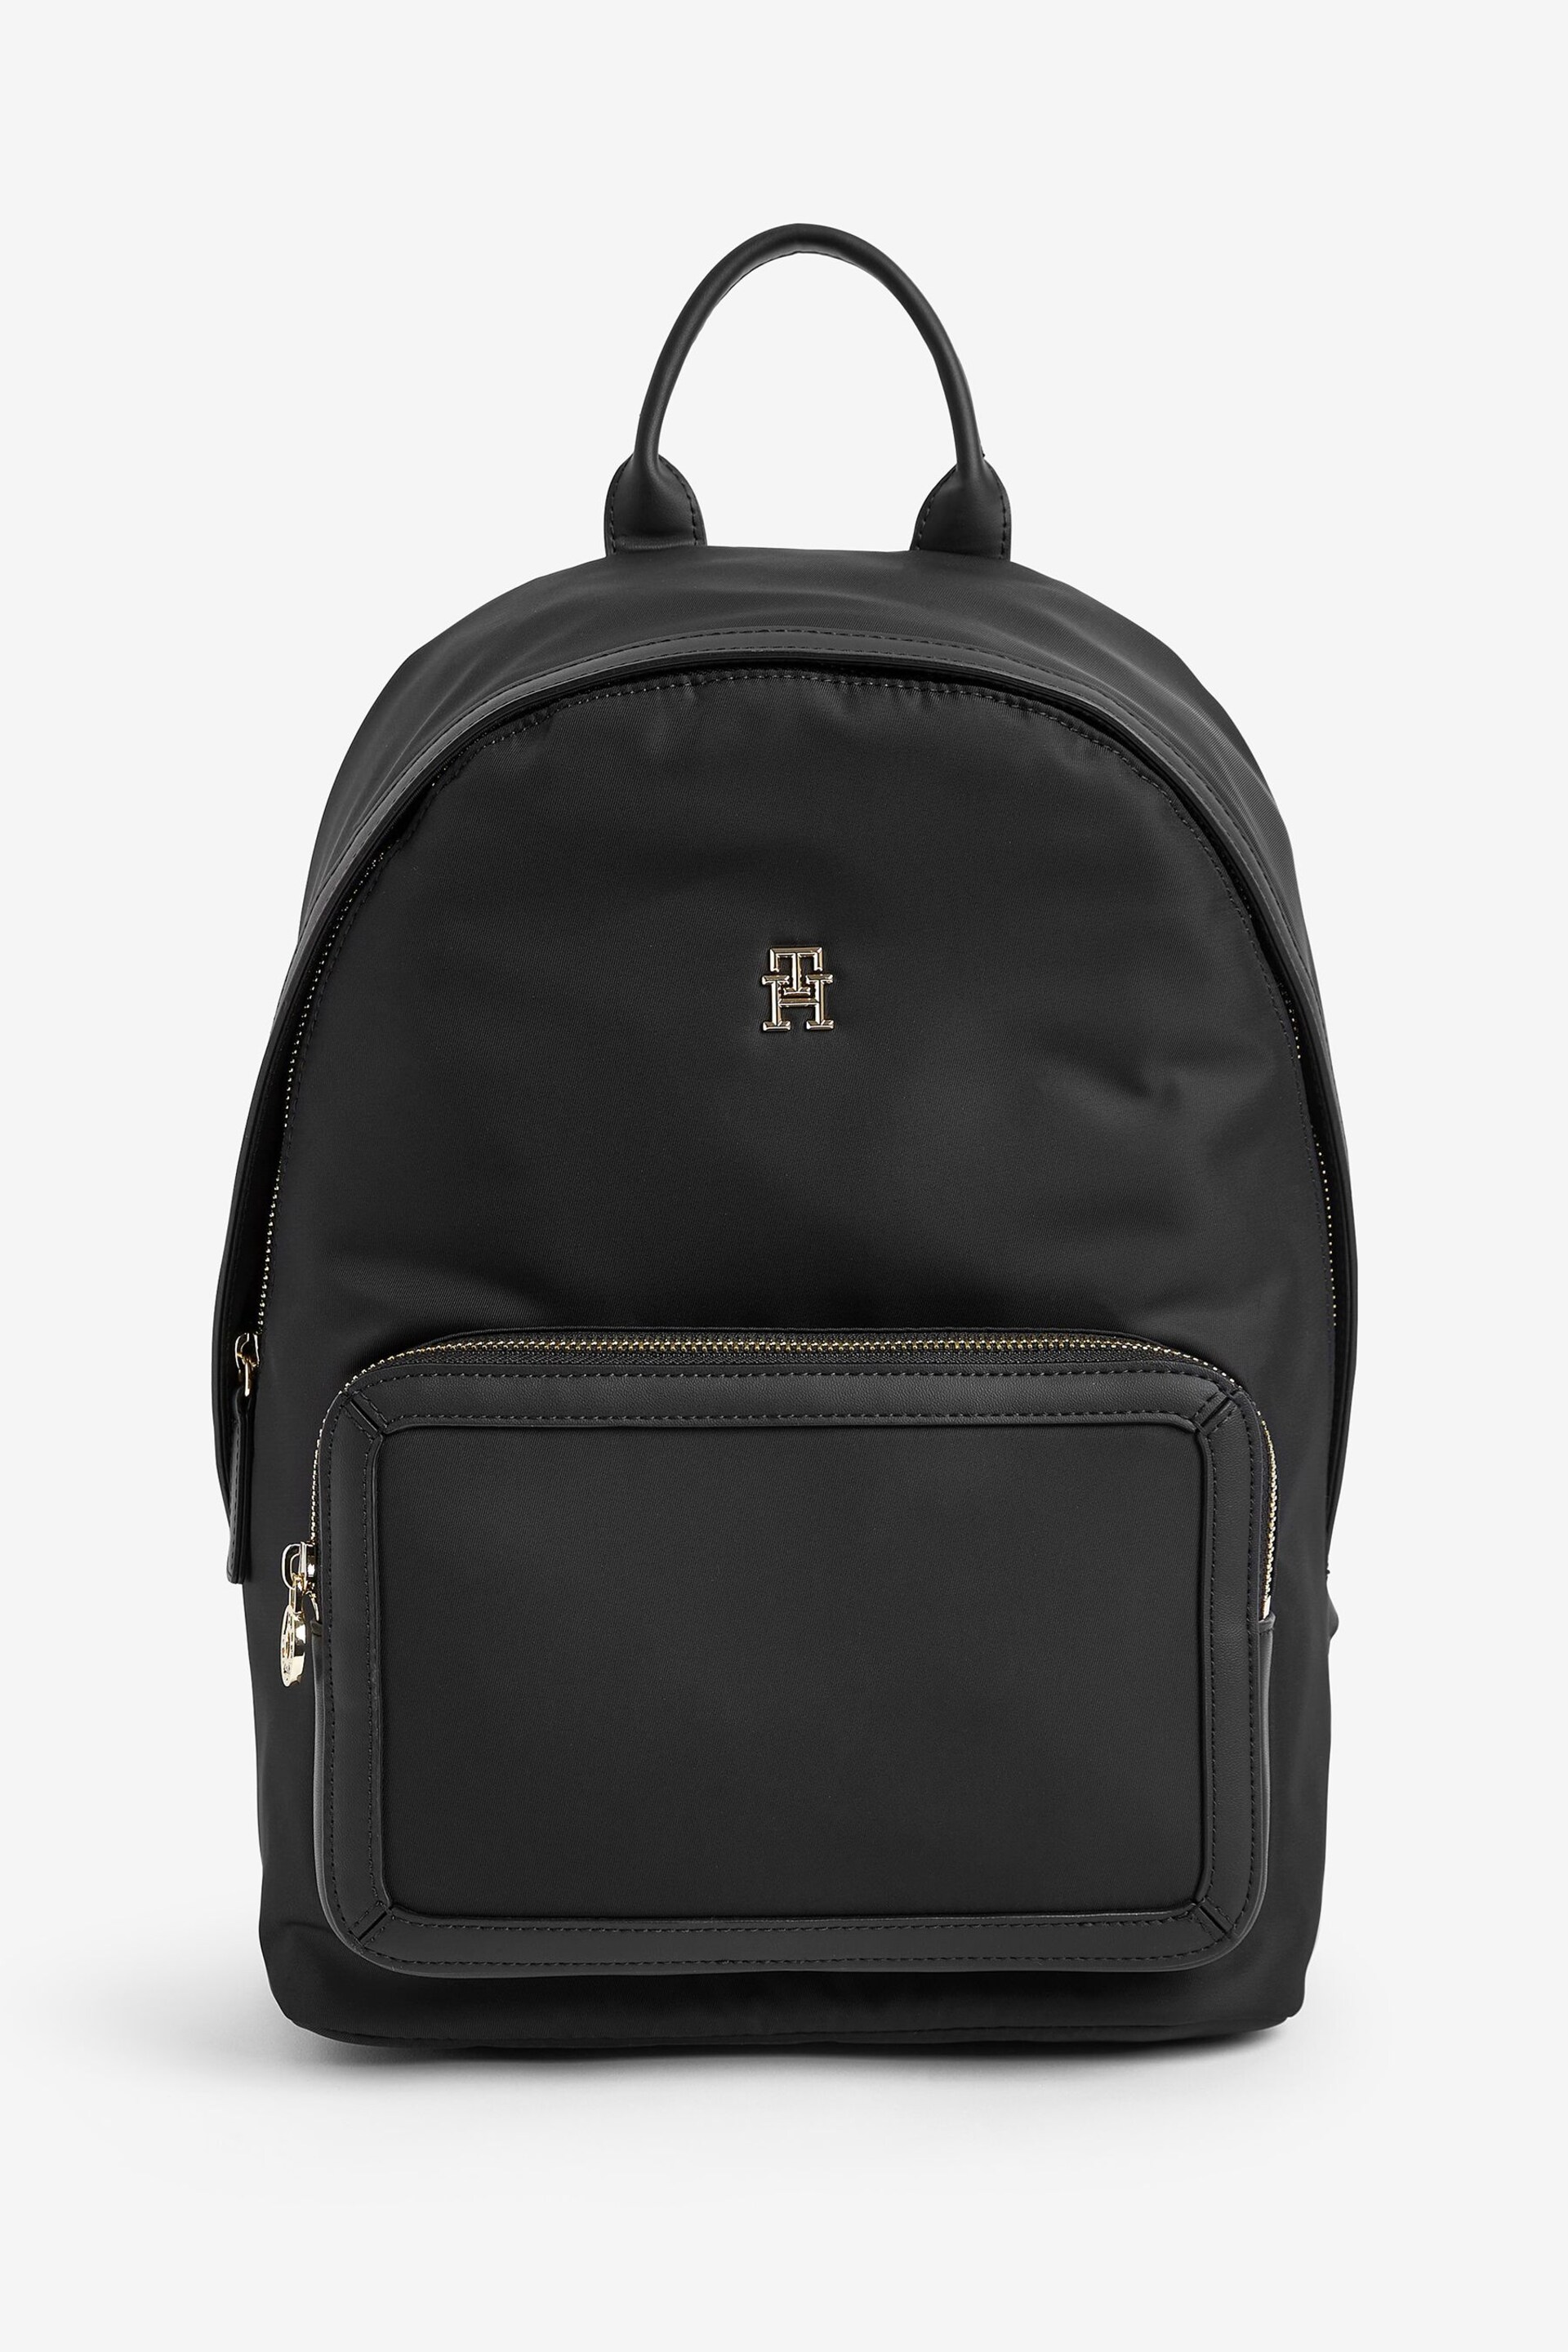 Tommy Hilfiger Essential Black Backpack - Image 2 of 6